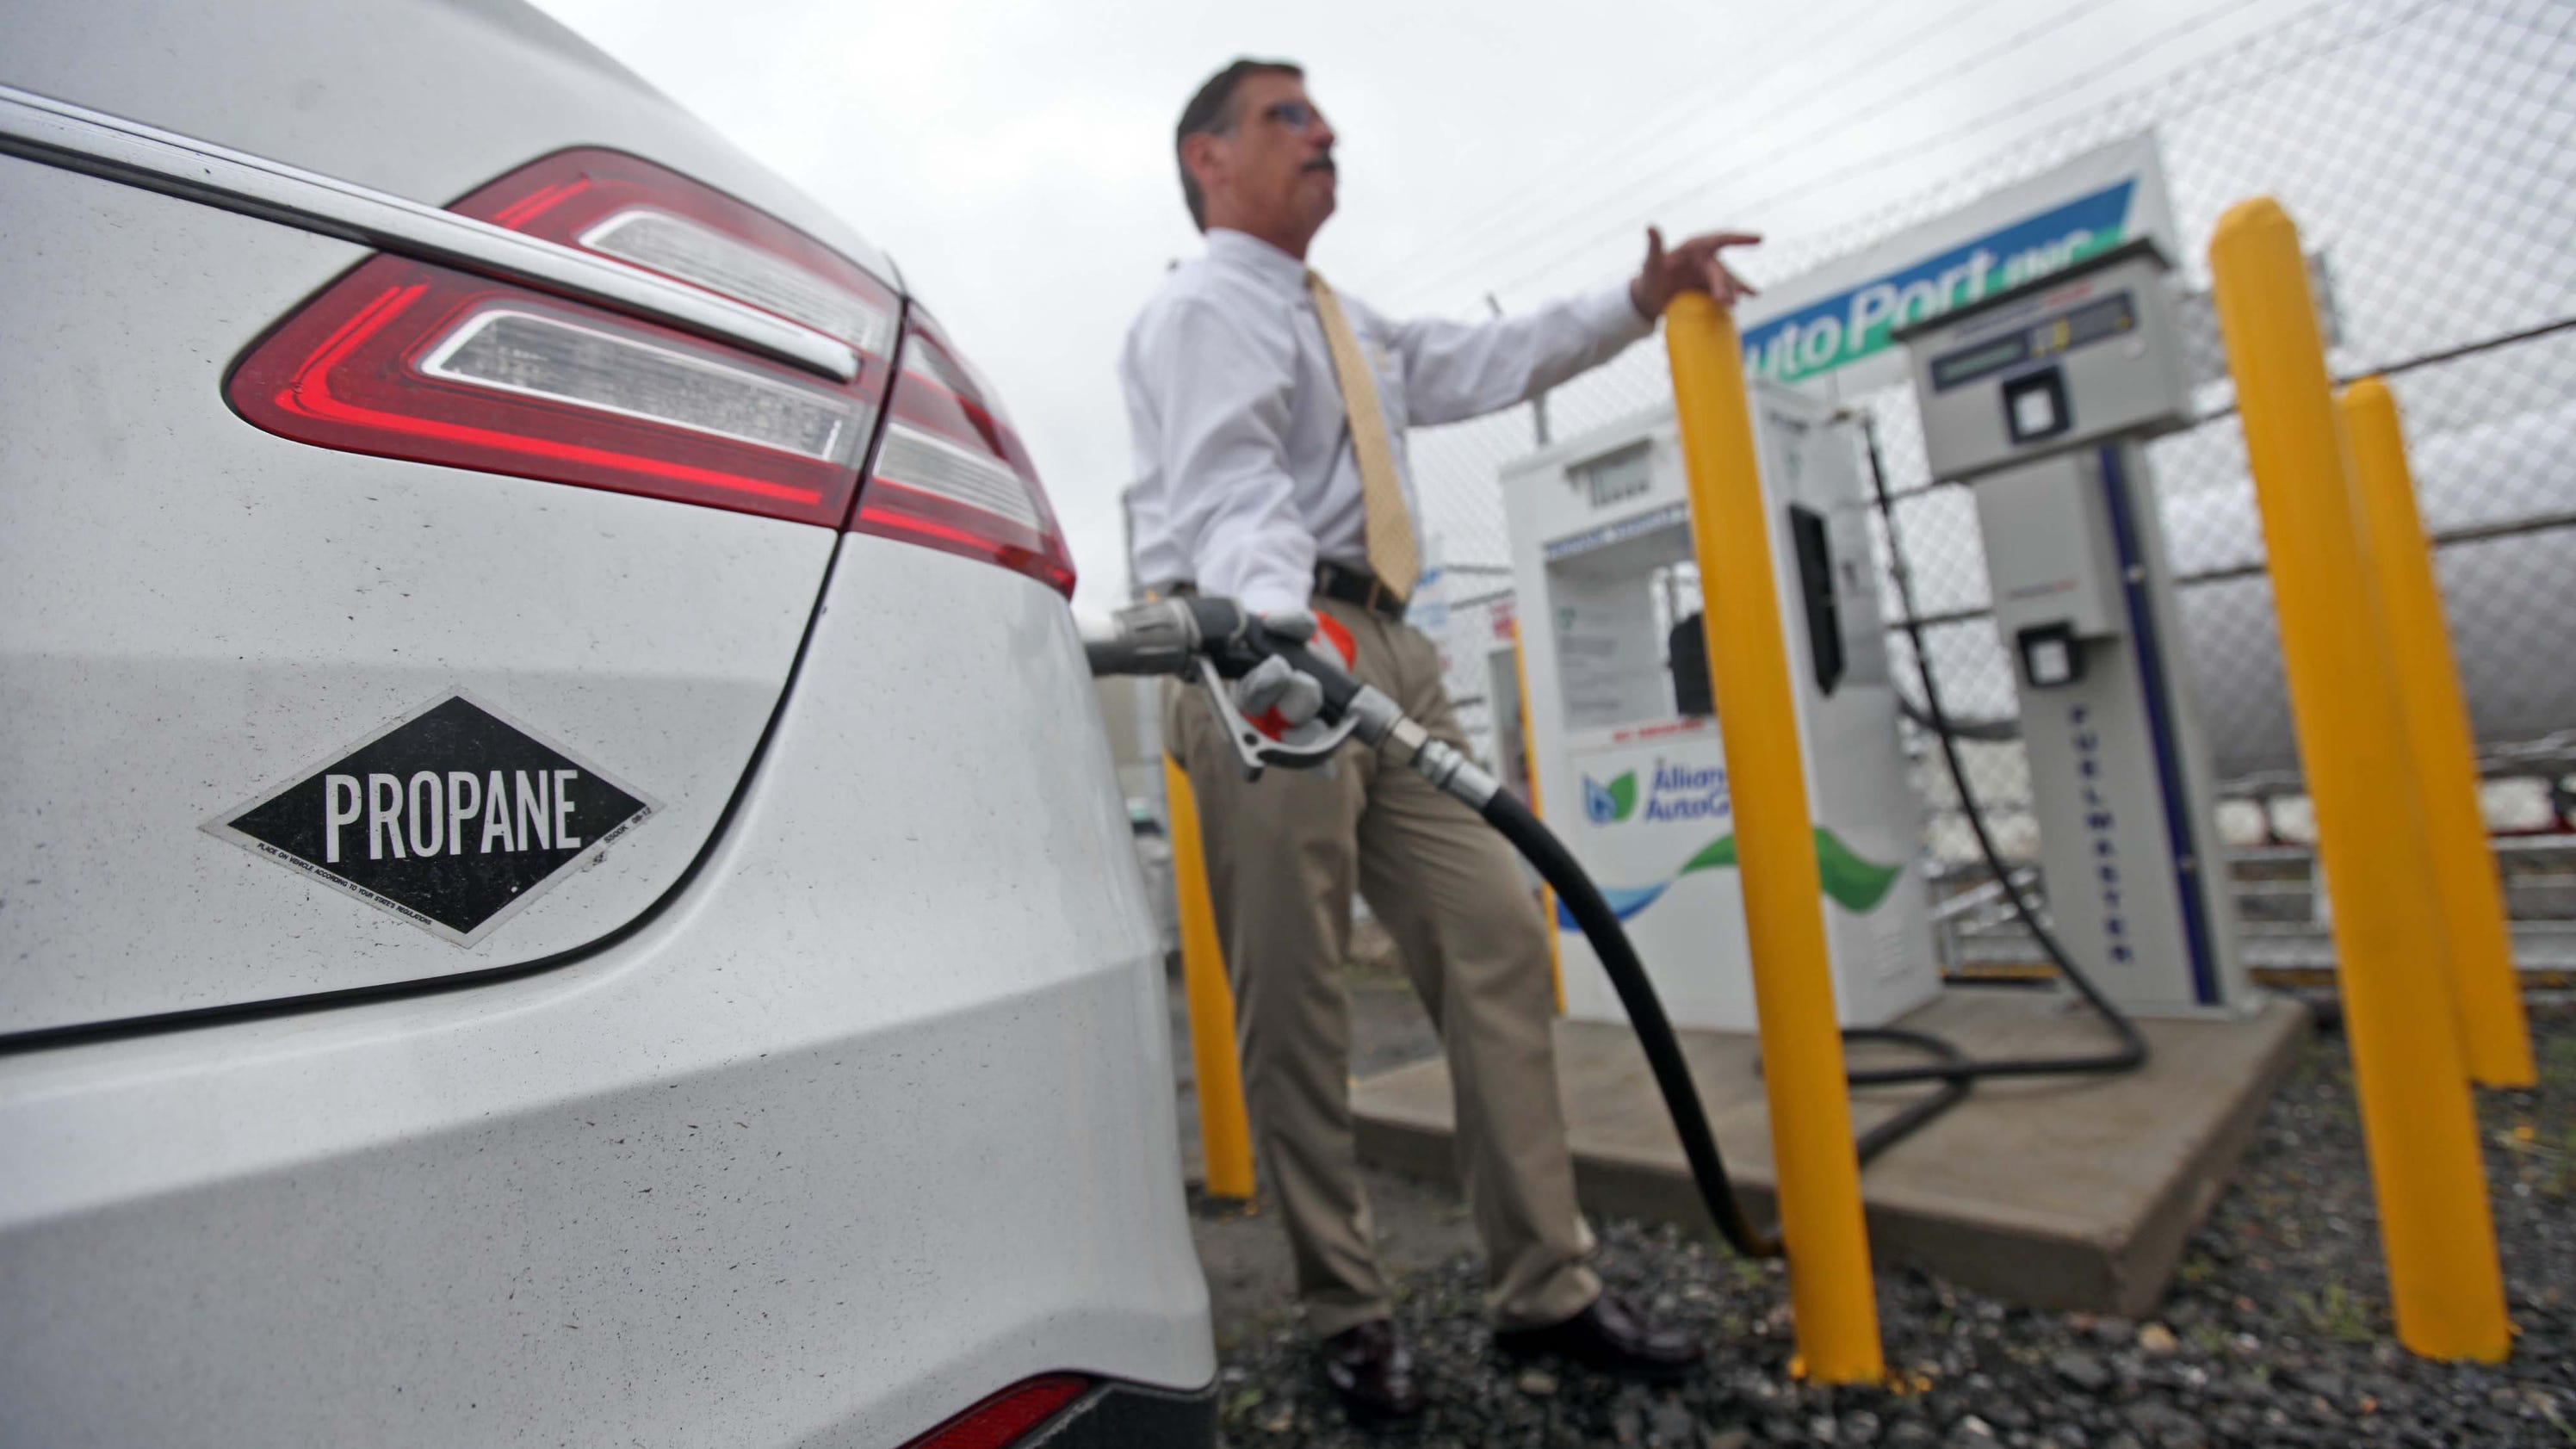 AutoPort, Sharp Energy offer auto propane fill ups in Delaware